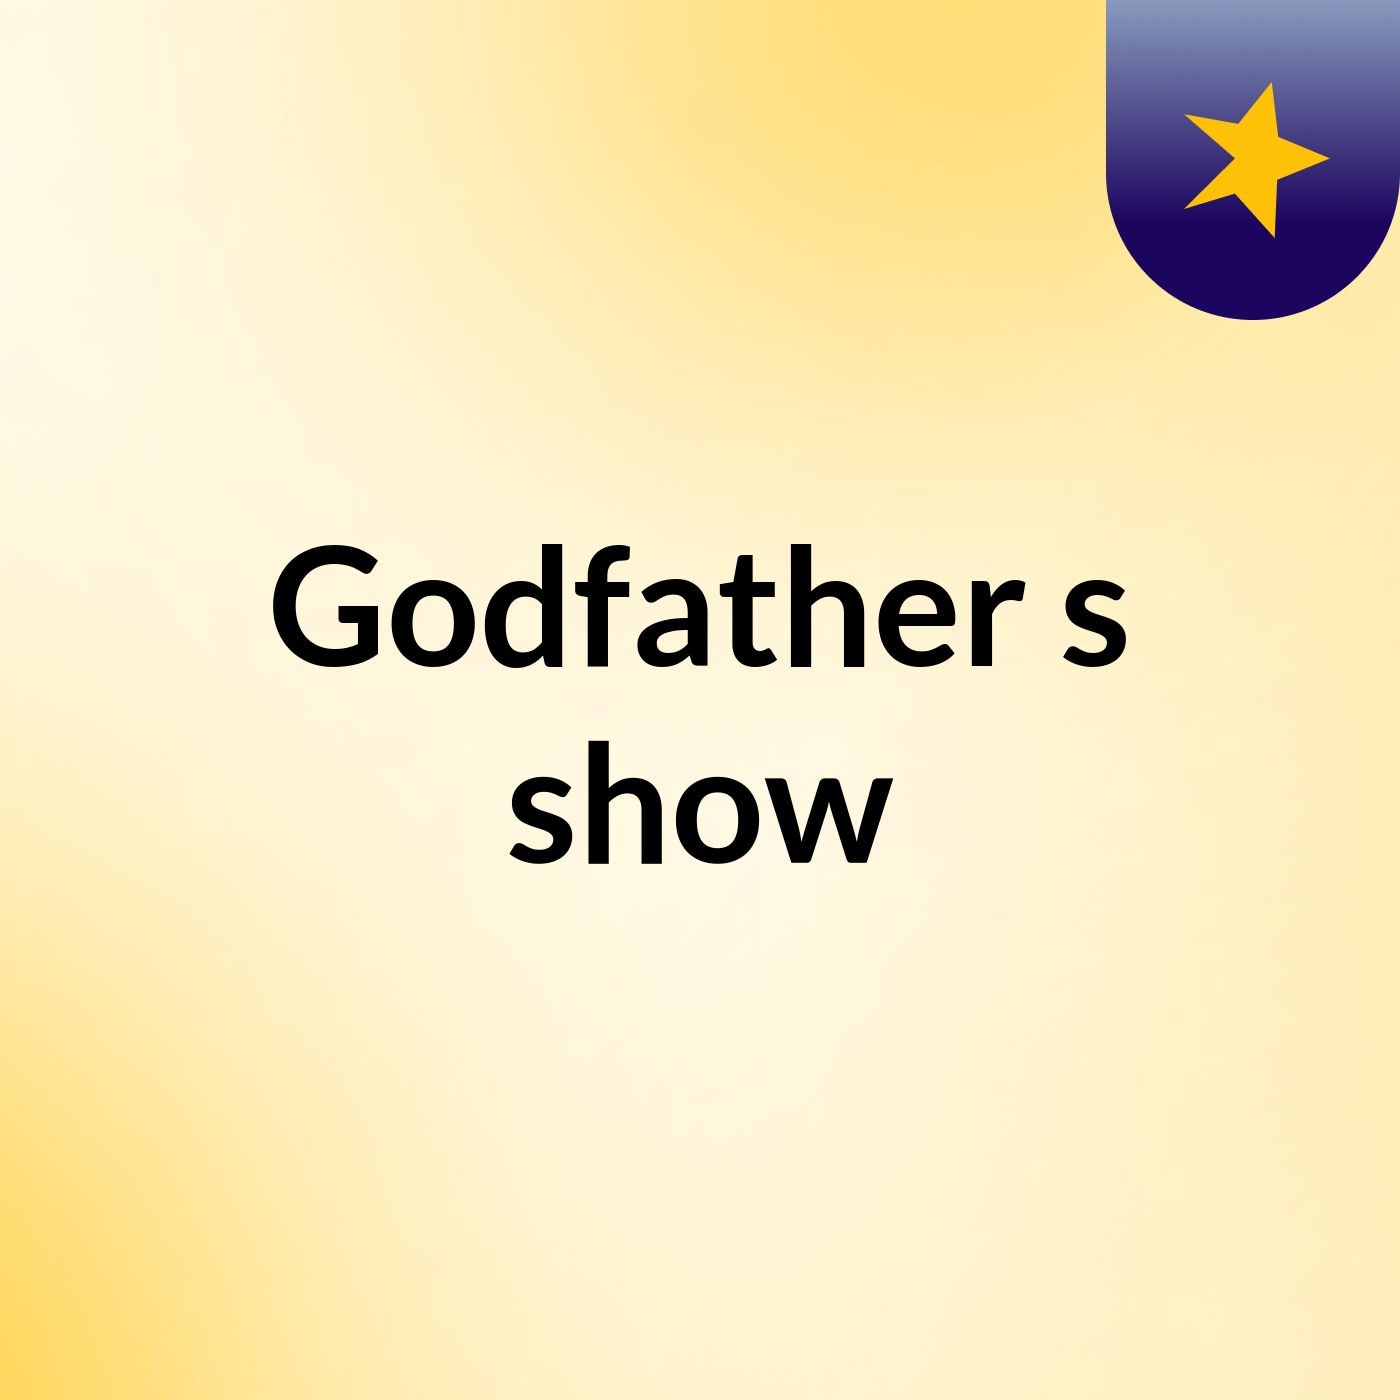 Godfather's show